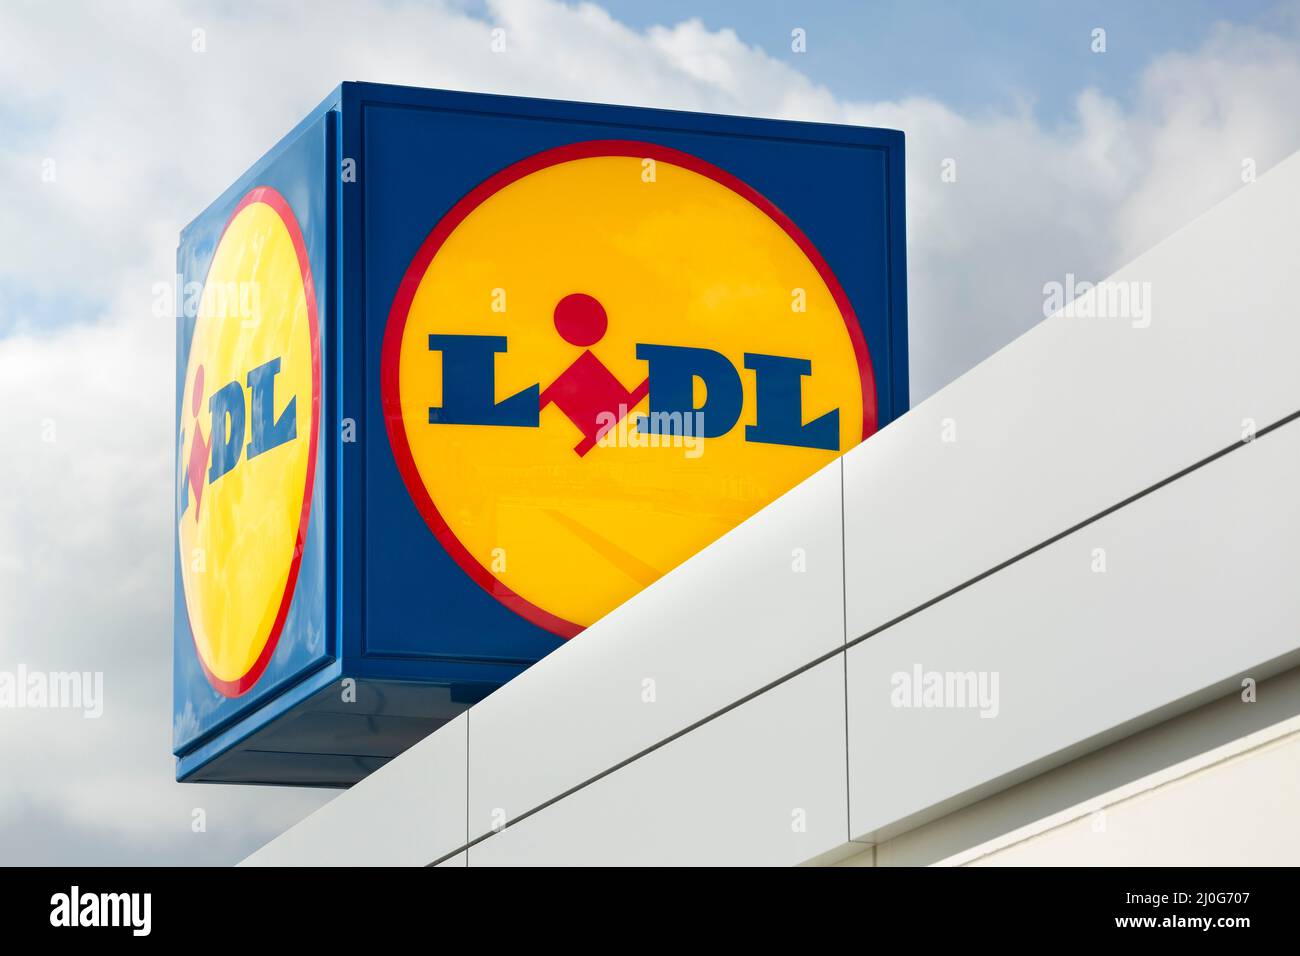 MADRID, SPAGNA - 13 FEBBRAIO 2022: Poster pubblicitario con il logo della catena multinazionale tedesca di supermercati a prezzi scontati Lidl. Foto Stock